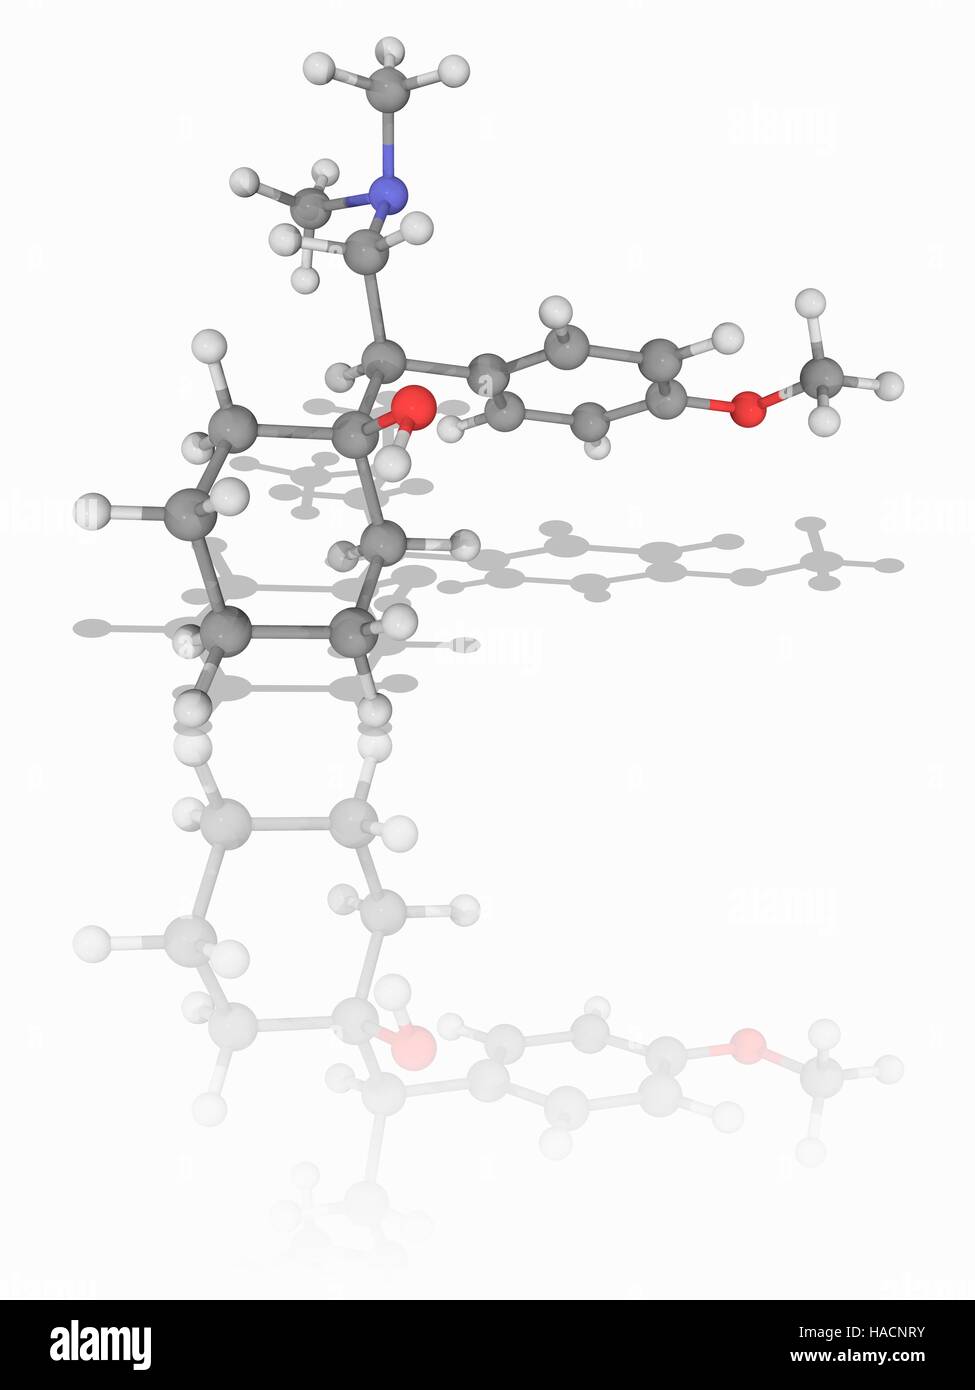 Venlafaxin. Molekülmodell von Antidepressivum Medikament Venlafaxin (C17. H27. N.O2). Zur Behandlung von Depressionen, allgemeine Angststörung, soziale Phobie, Panikstörung und vasomotorische Symptome, ist es ein Serotonin-Noradrenalin-Reuptake-Hemmer. Atome als Kugeln dargestellt werden und sind farblich gekennzeichnet: Kohlenstoff (grau), Wasserstoff (weiß), Stickstoff (blau) und Sauerstoff (rot). Abbildung. Stockfoto